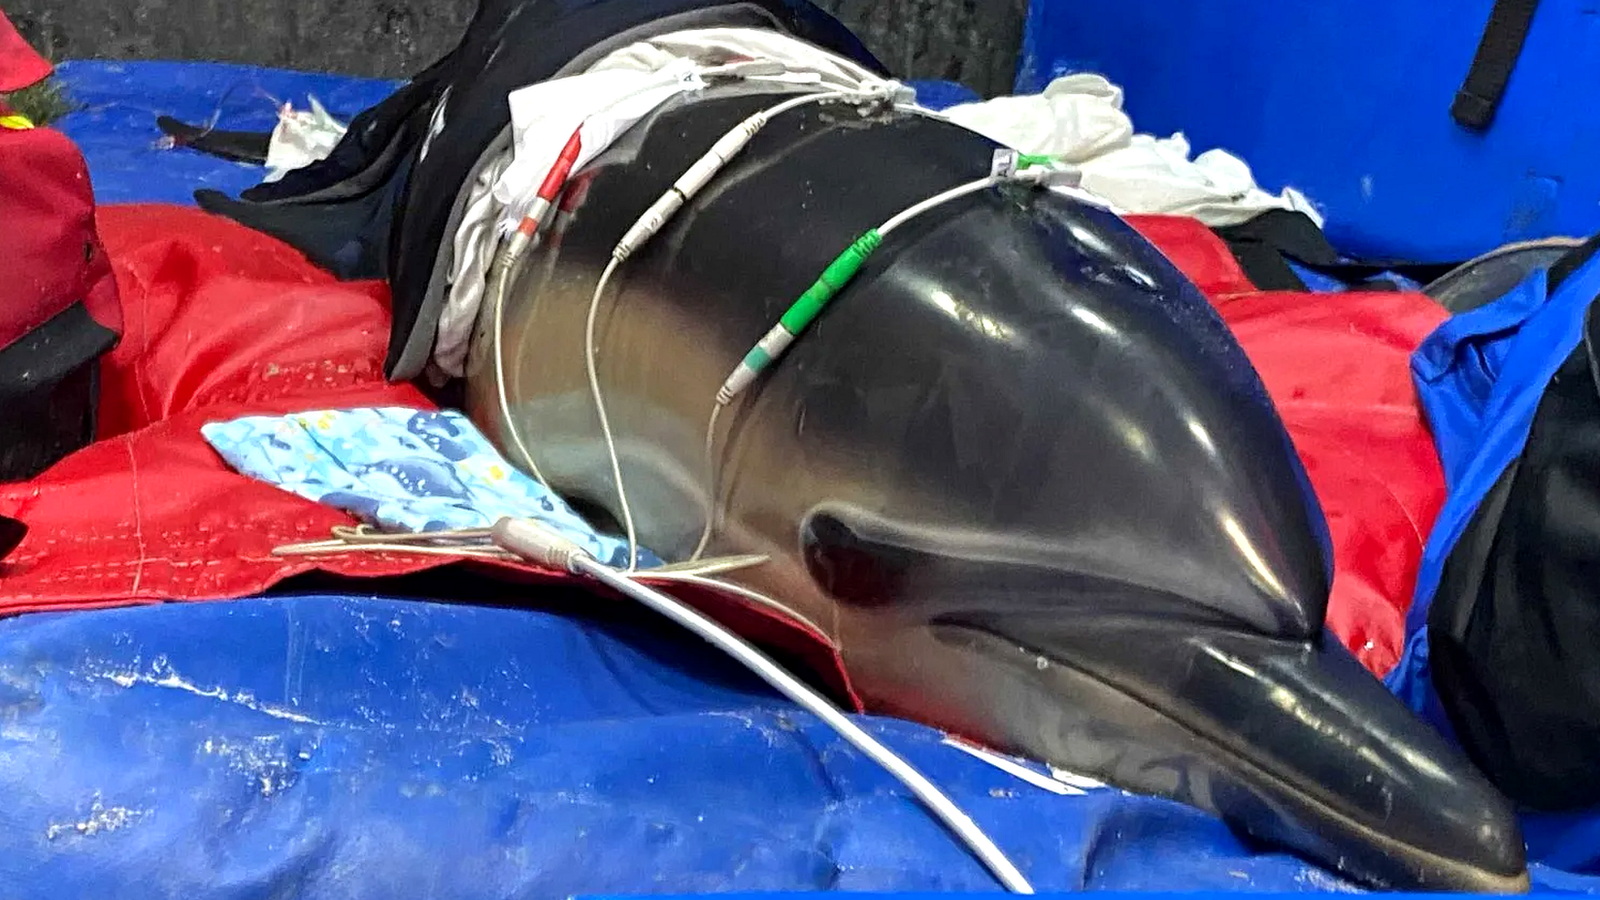 Ученые разобрались в механизме совокупления дельфинов, надув их гениталии